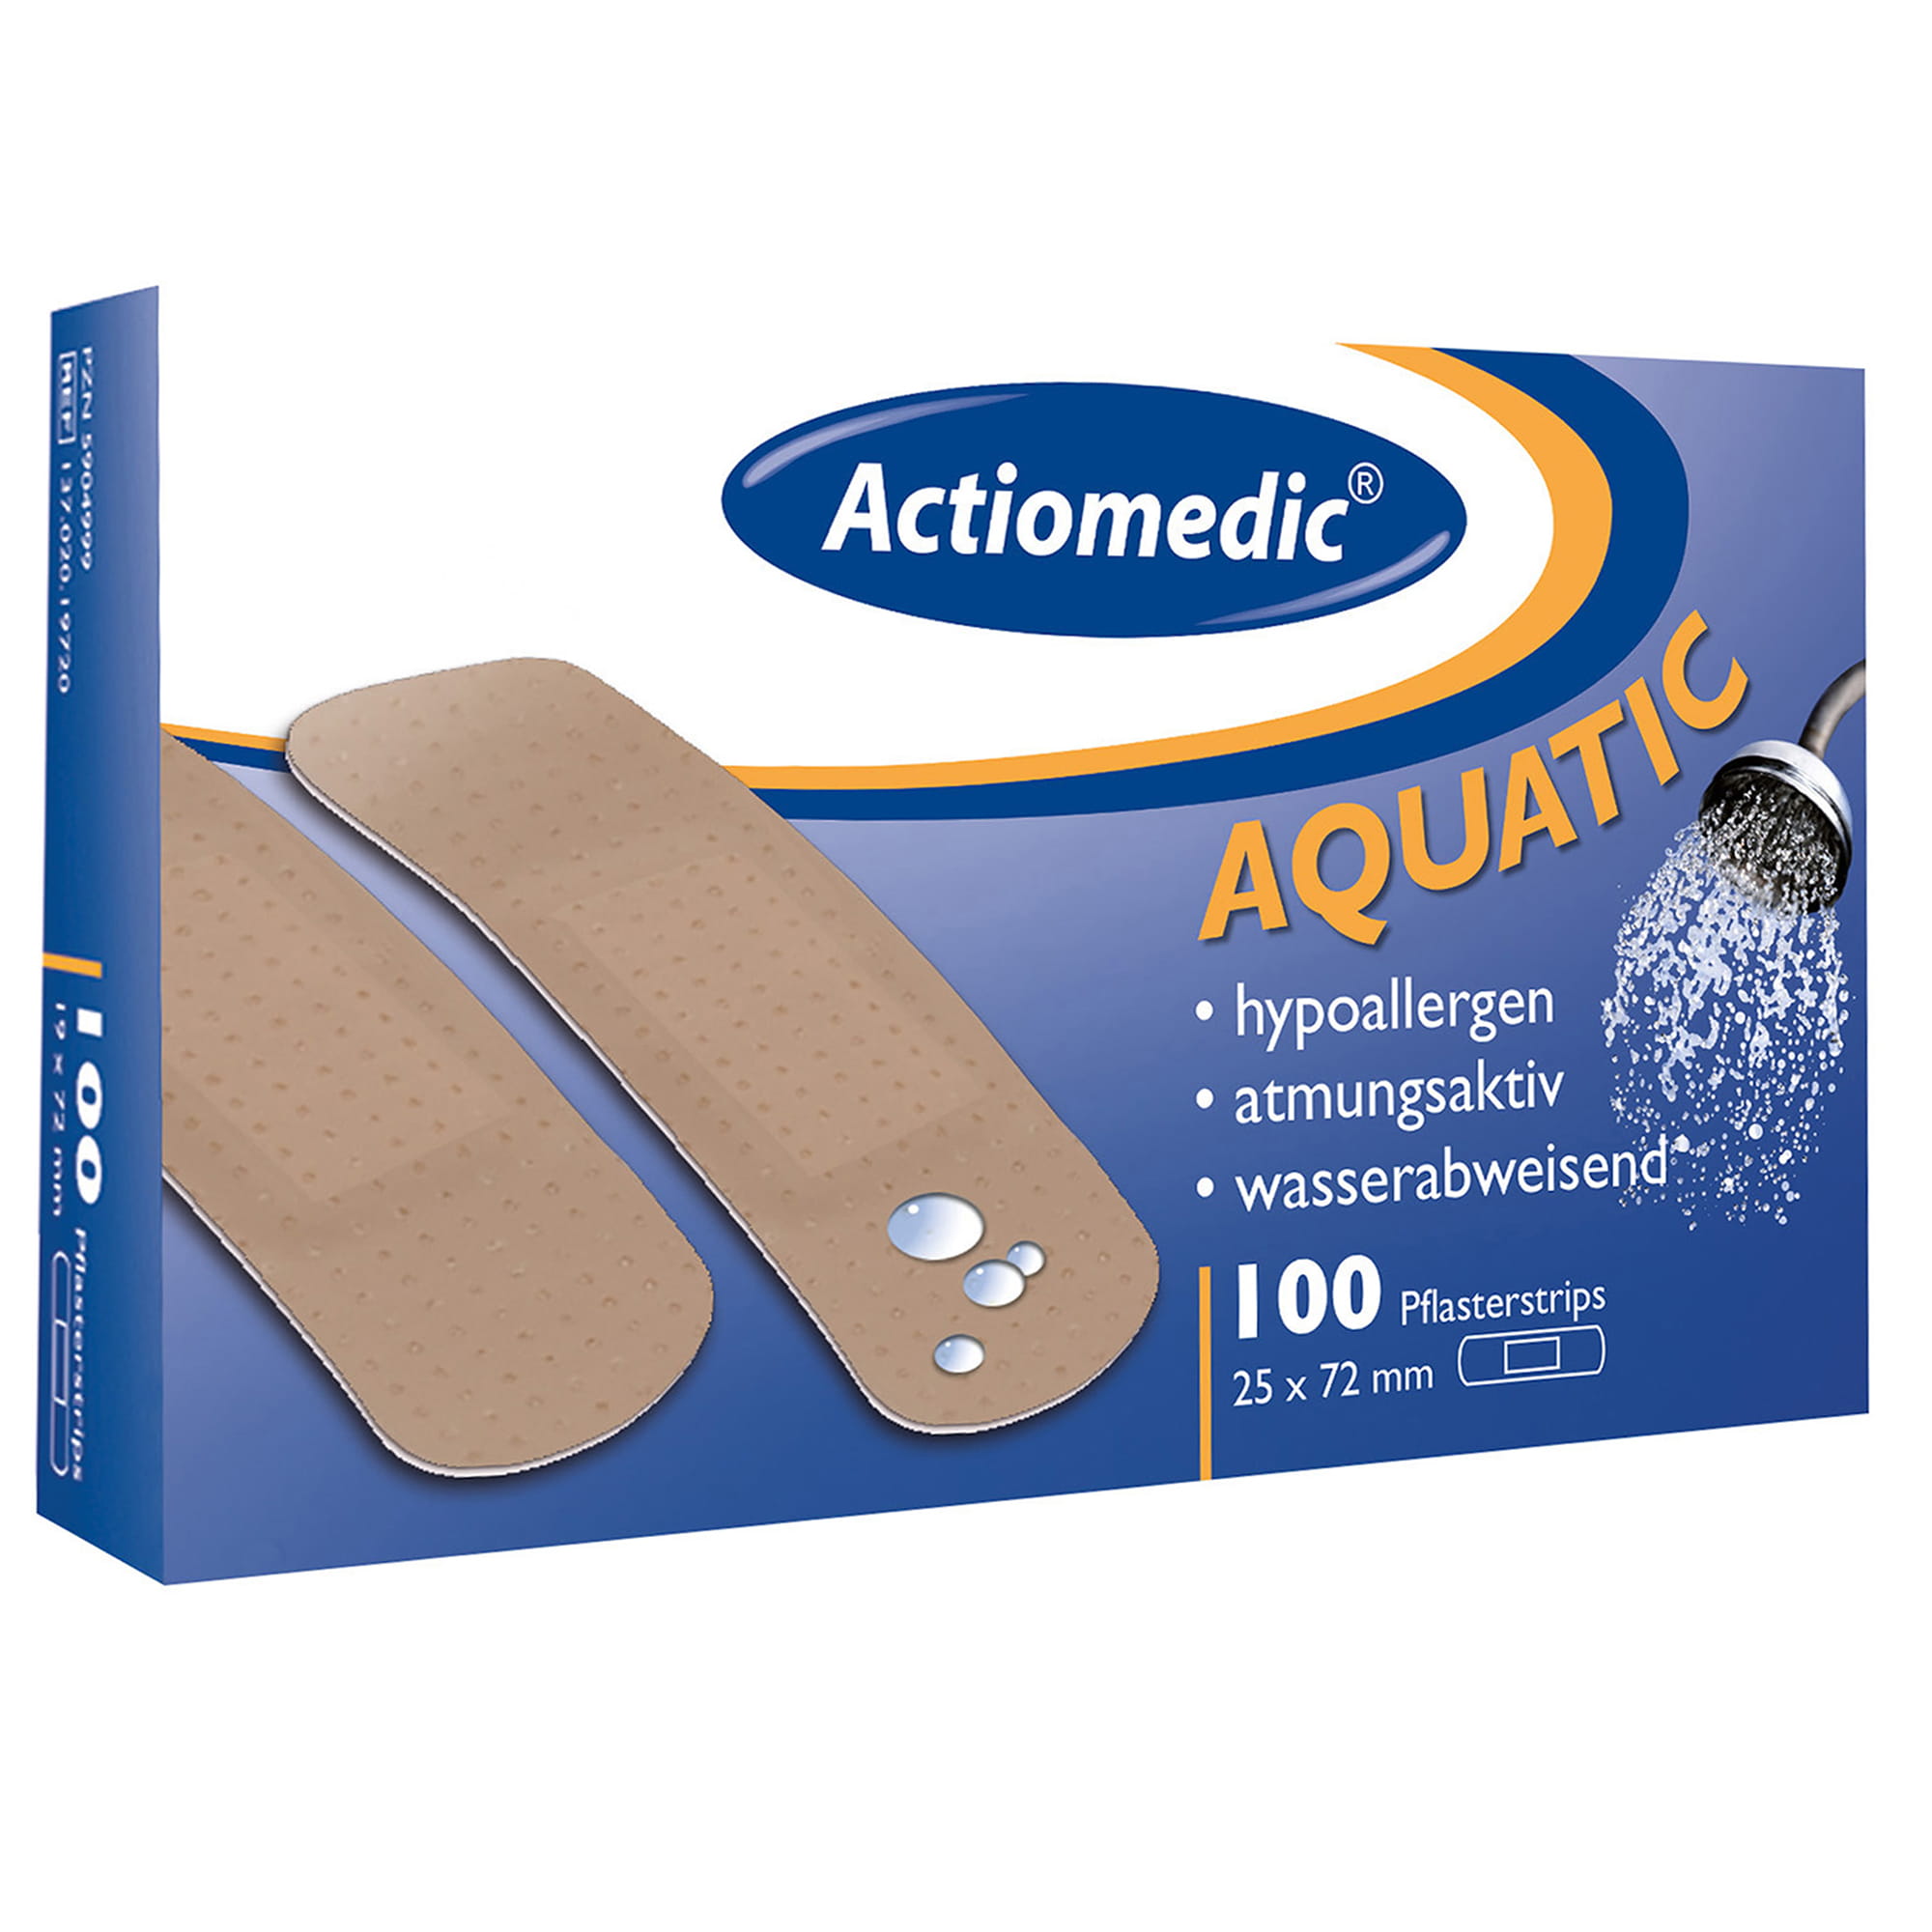 Actiomedic® AQUATIC Pflasterstrips 25 x 72 mm Pack à 100 Stück